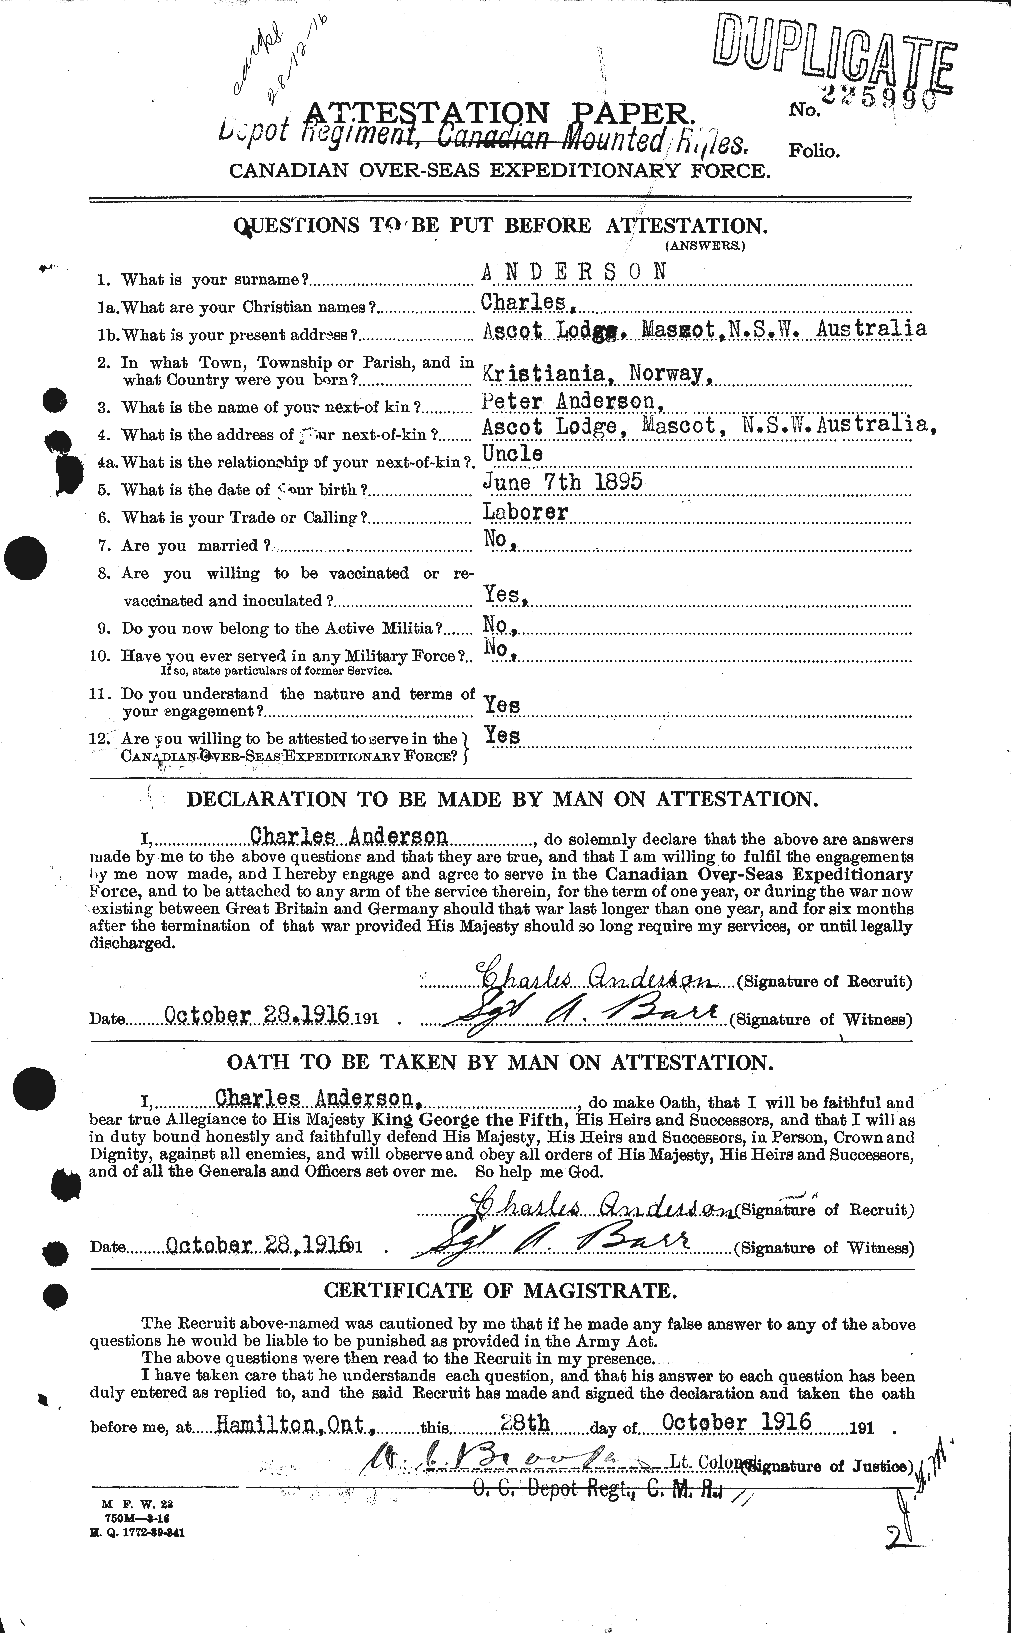 Dossiers du Personnel de la Première Guerre mondiale - CEC 209258a